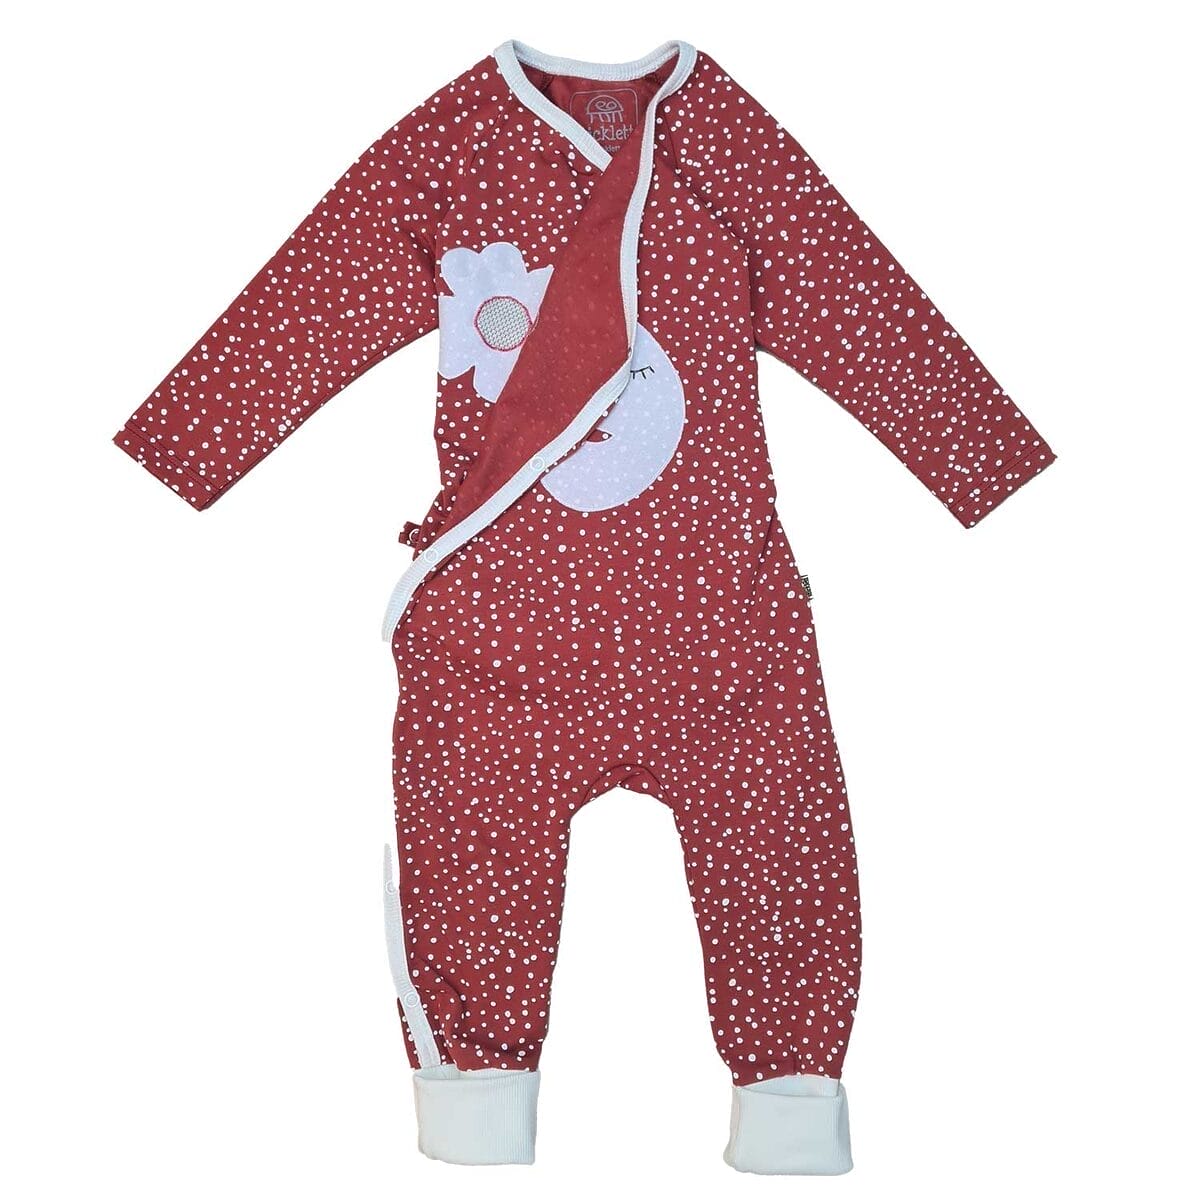 Rostroter Baby-Wickelstrampler Schlafanzug mit weißen Pünktchen und süßer Wolkenapplikation, vollständig zu öffnen für leichtes Anziehen, aus Bio-Baumwolle.